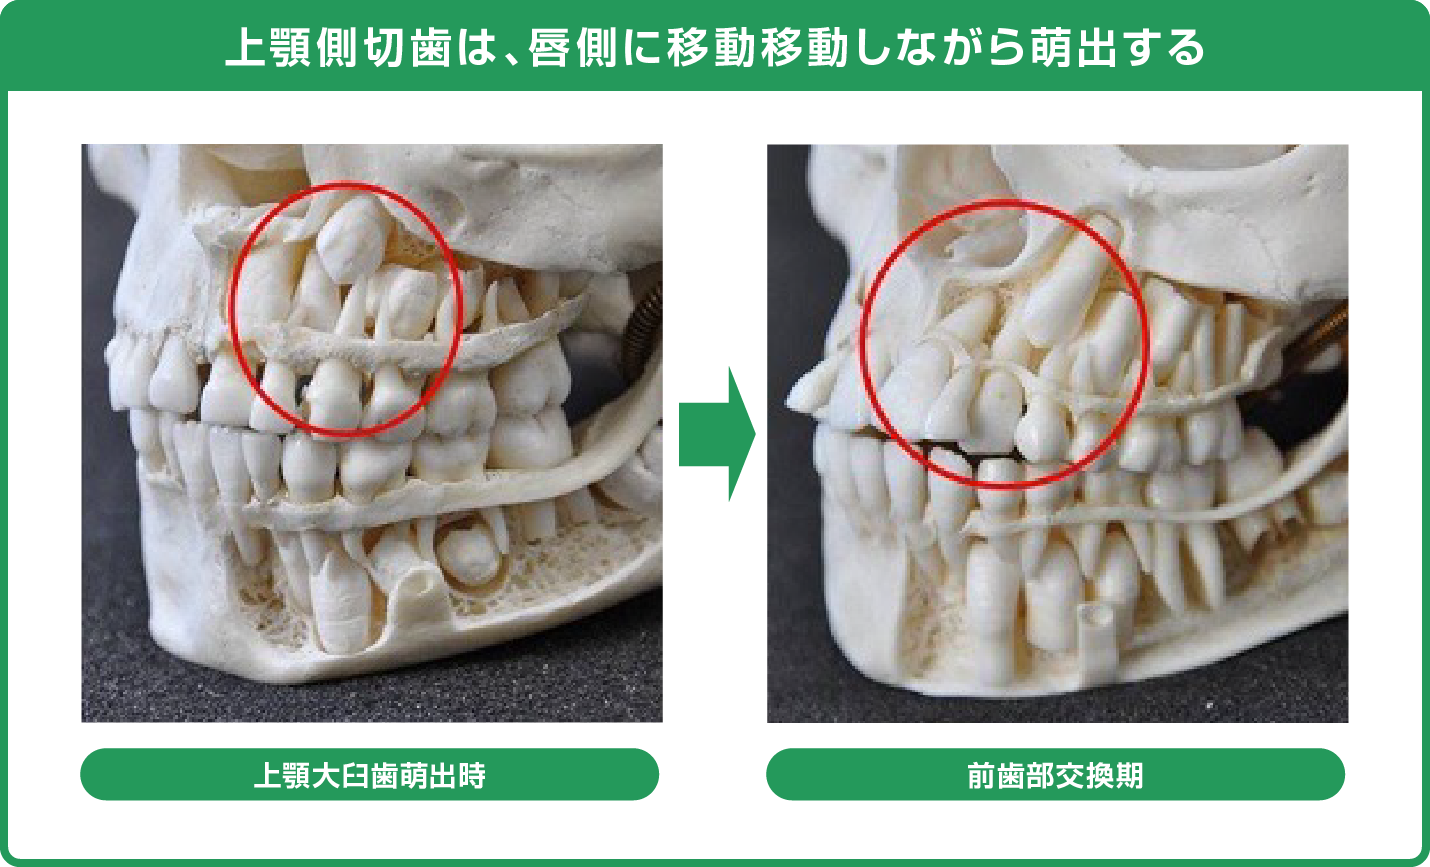 上顎側切歯は、唇側に移動移動しながら萌出する